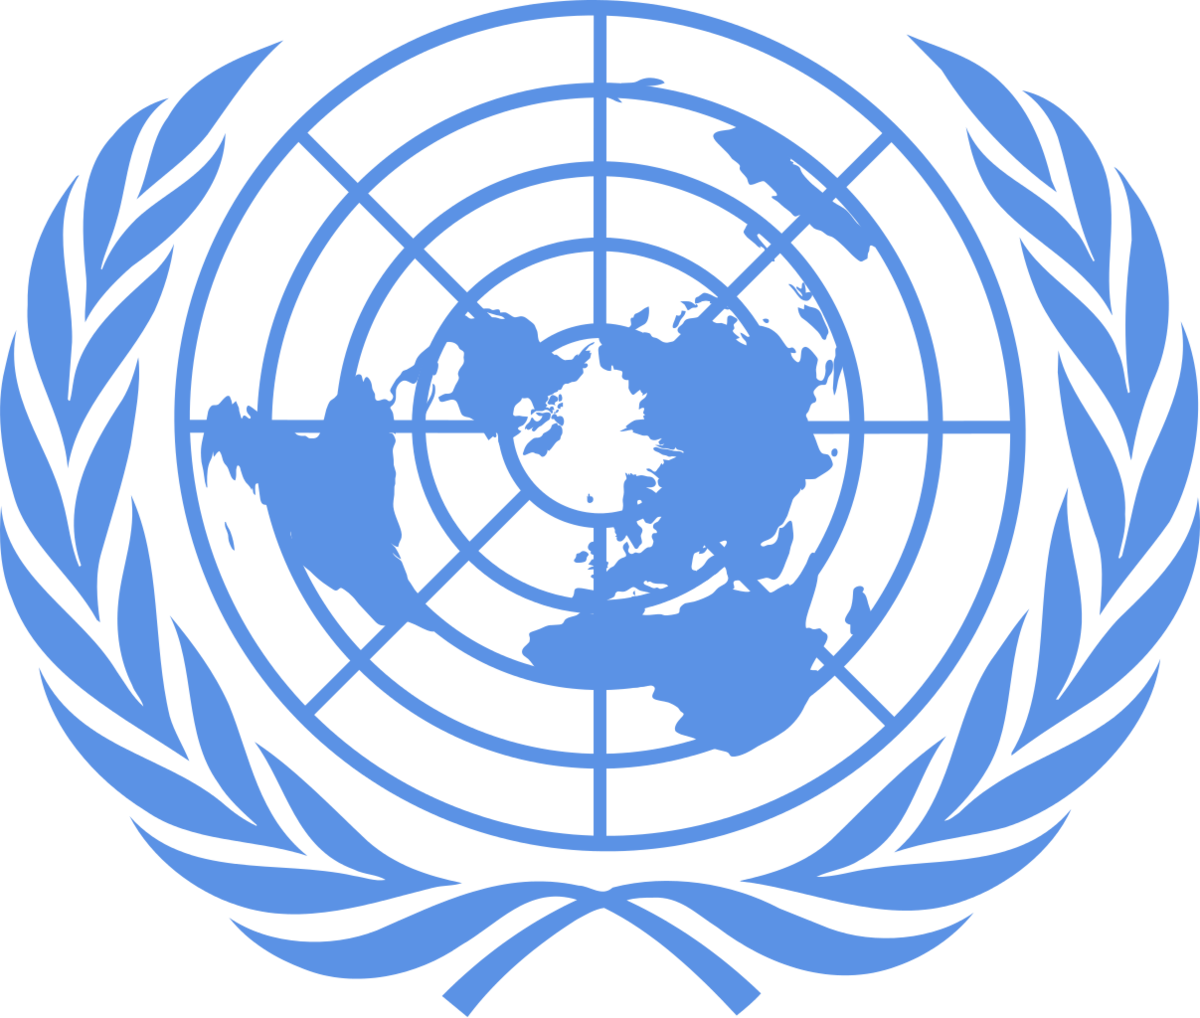 FNs emblem